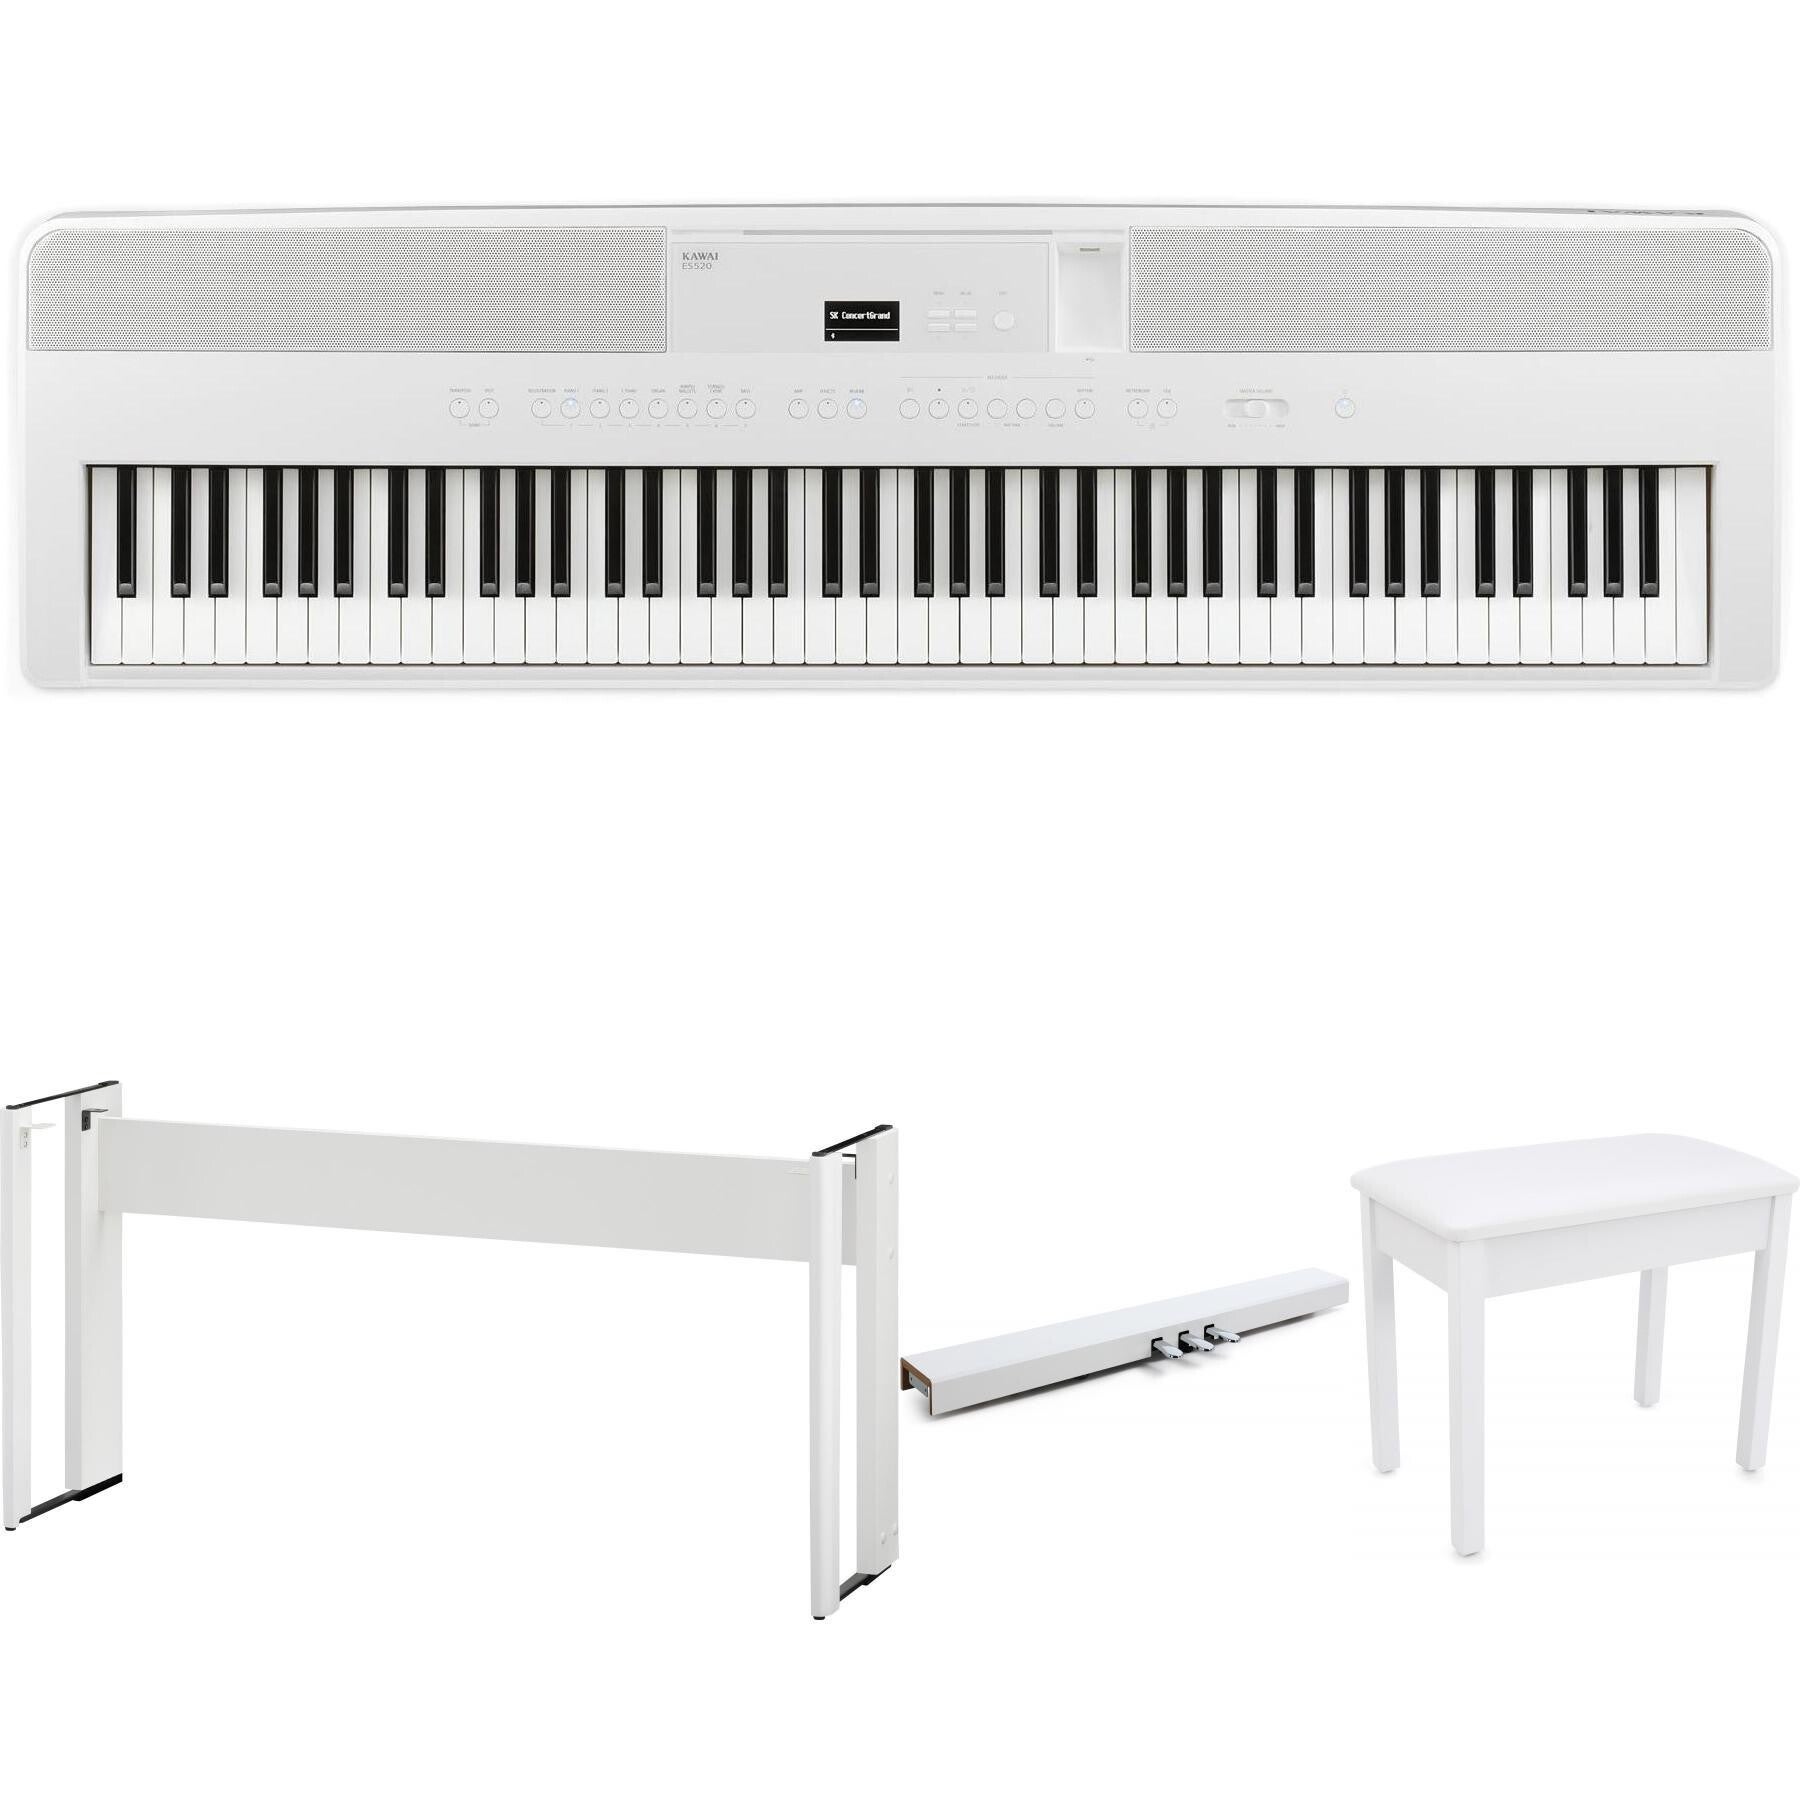 Kawai ES520 Digital Piano - Kawai ES Portable Digital Pianos